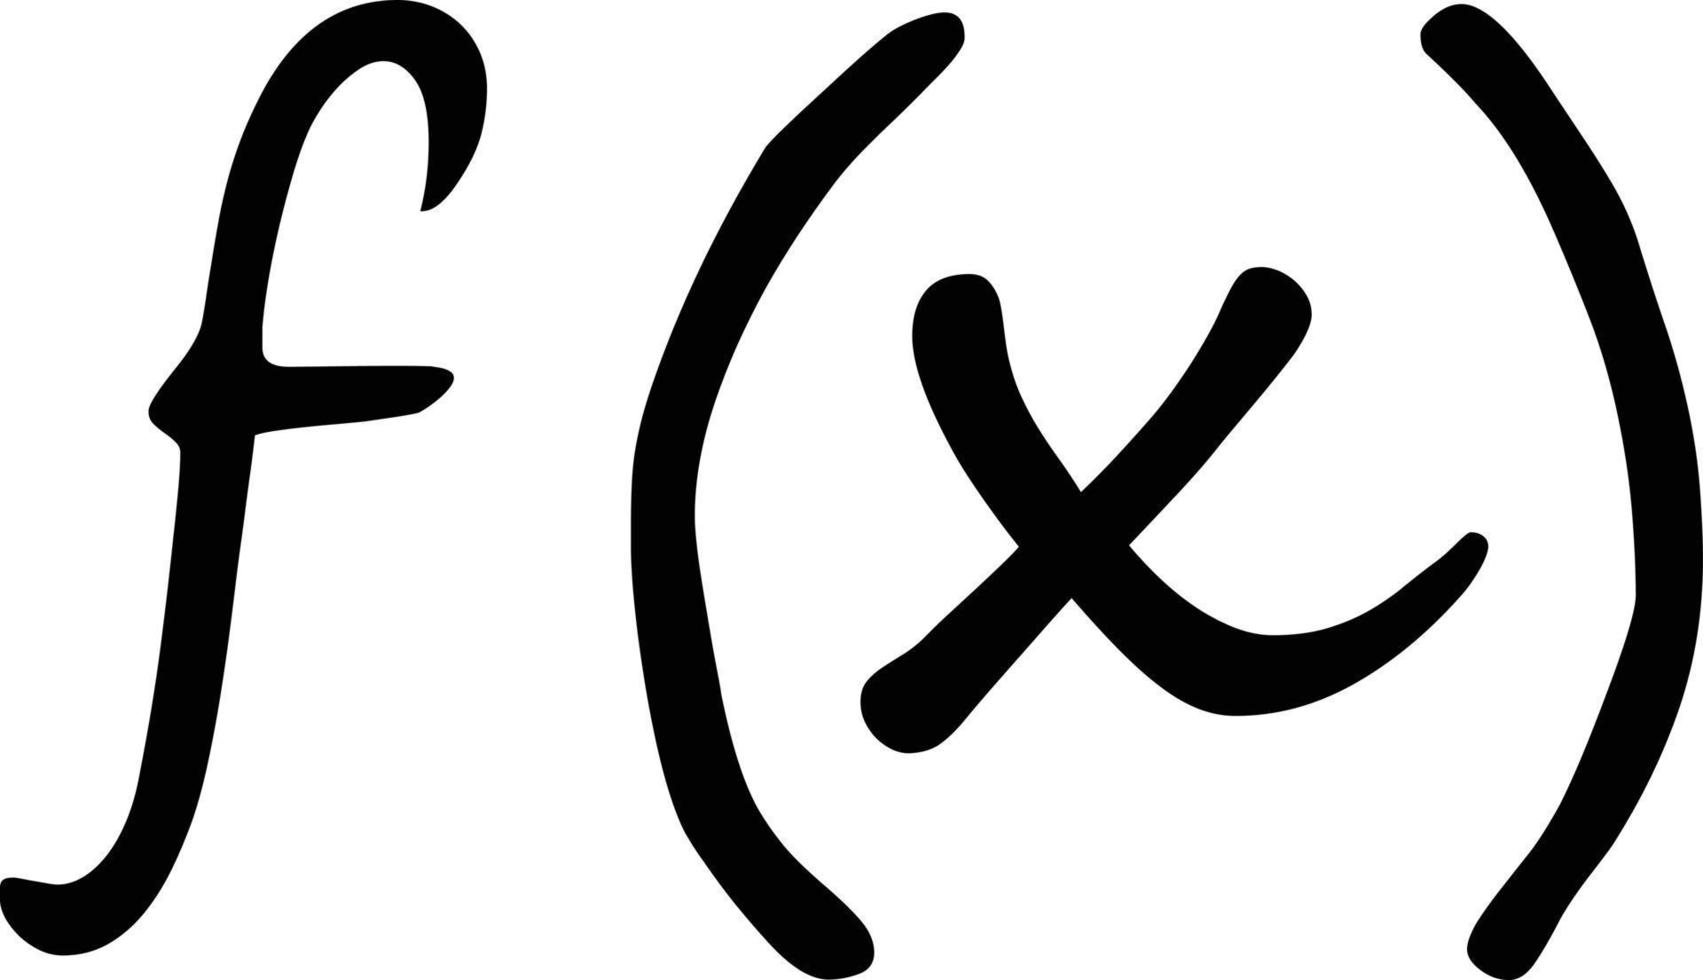 icono de símbolo de función sobre fondo blanco. función del signo del símbolo x en matemáticas. estilo plano vector